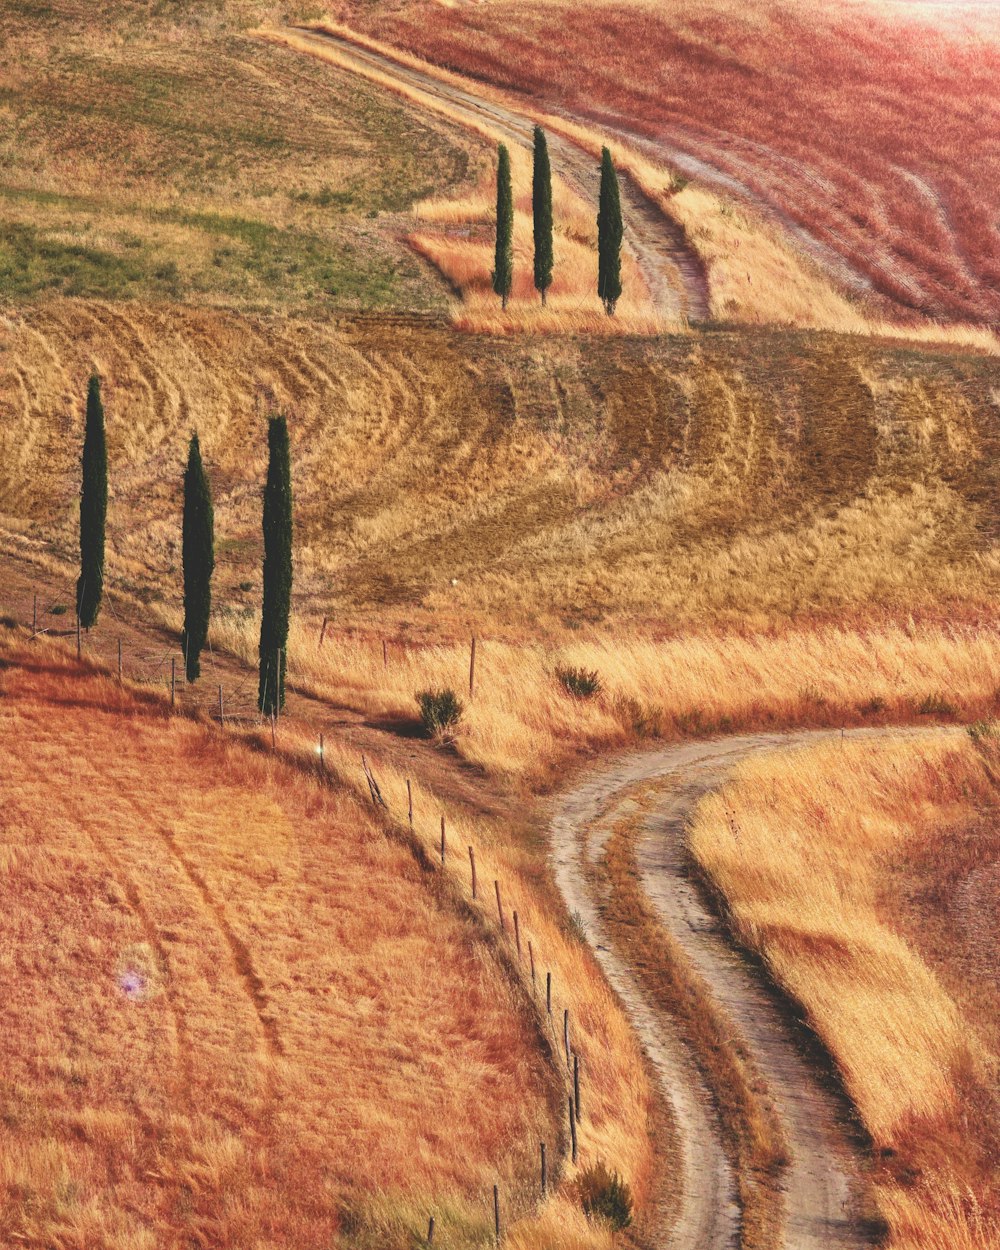 Landmarkfotografie von orangefarbenen und roten Gräsern mit Weg und grünen Bäumen